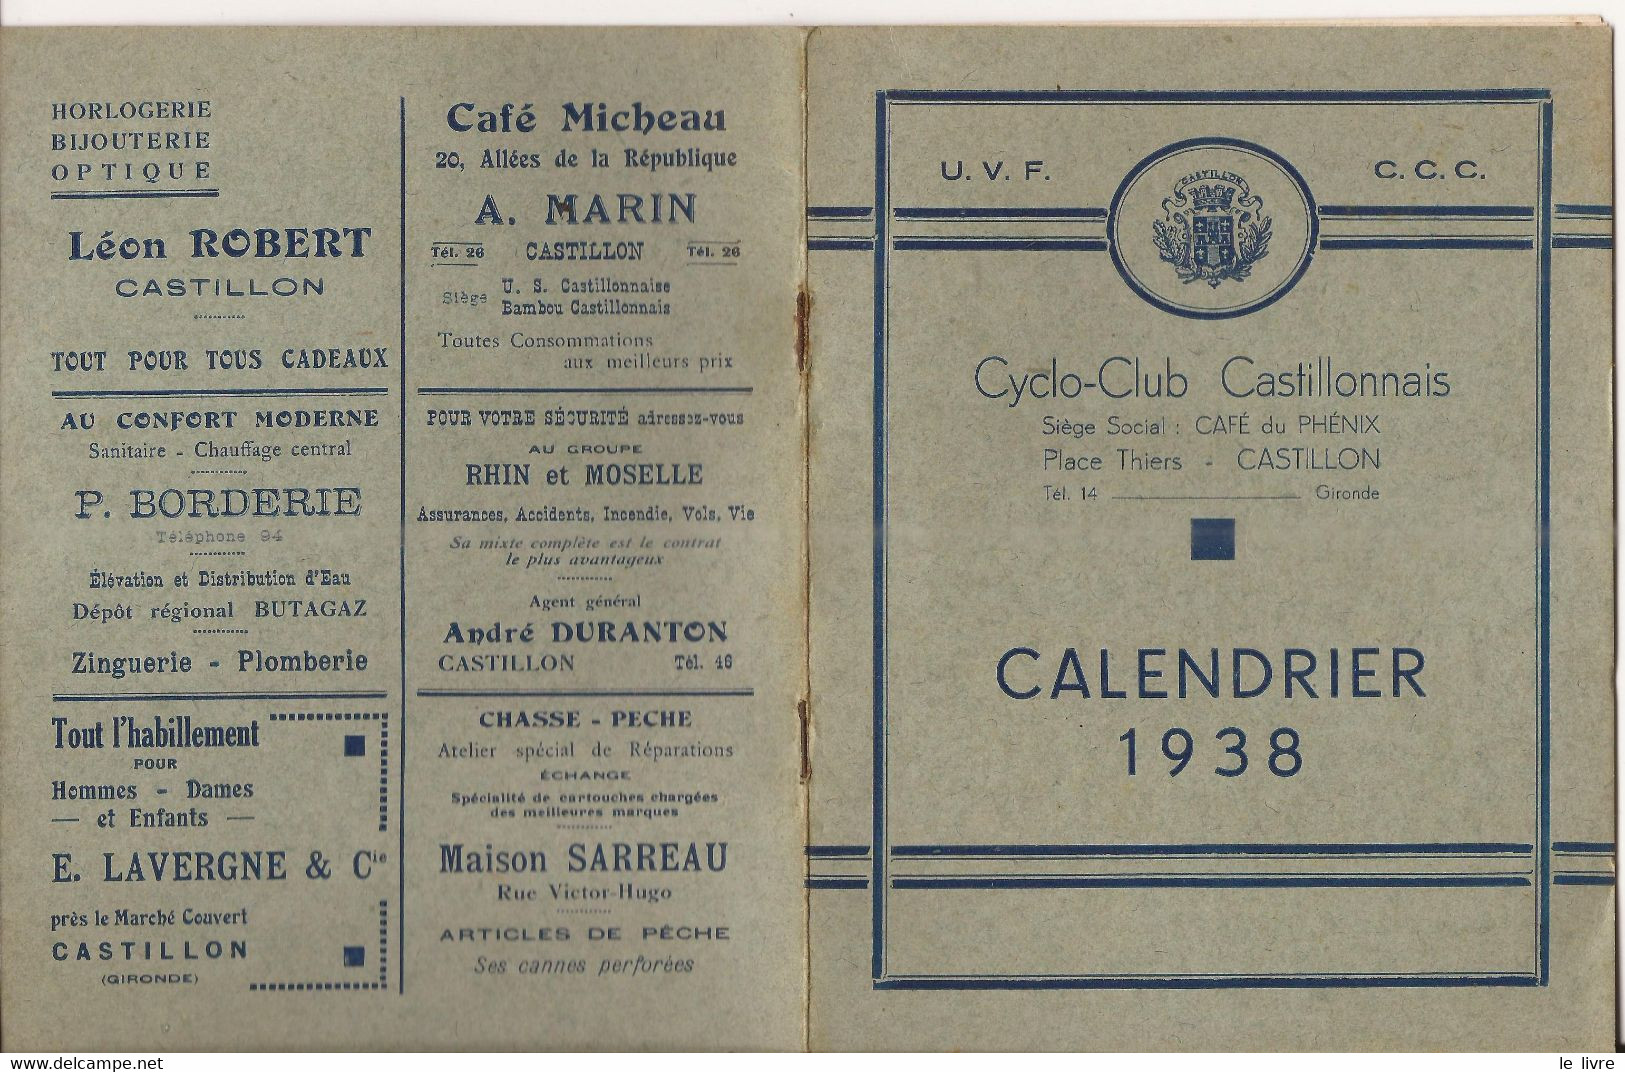 CASTILLON DORDOGNE PROGRAMME CALENDRIER 1938 CYCLO-CLUB CASTILLONNAIS PUBLICITES